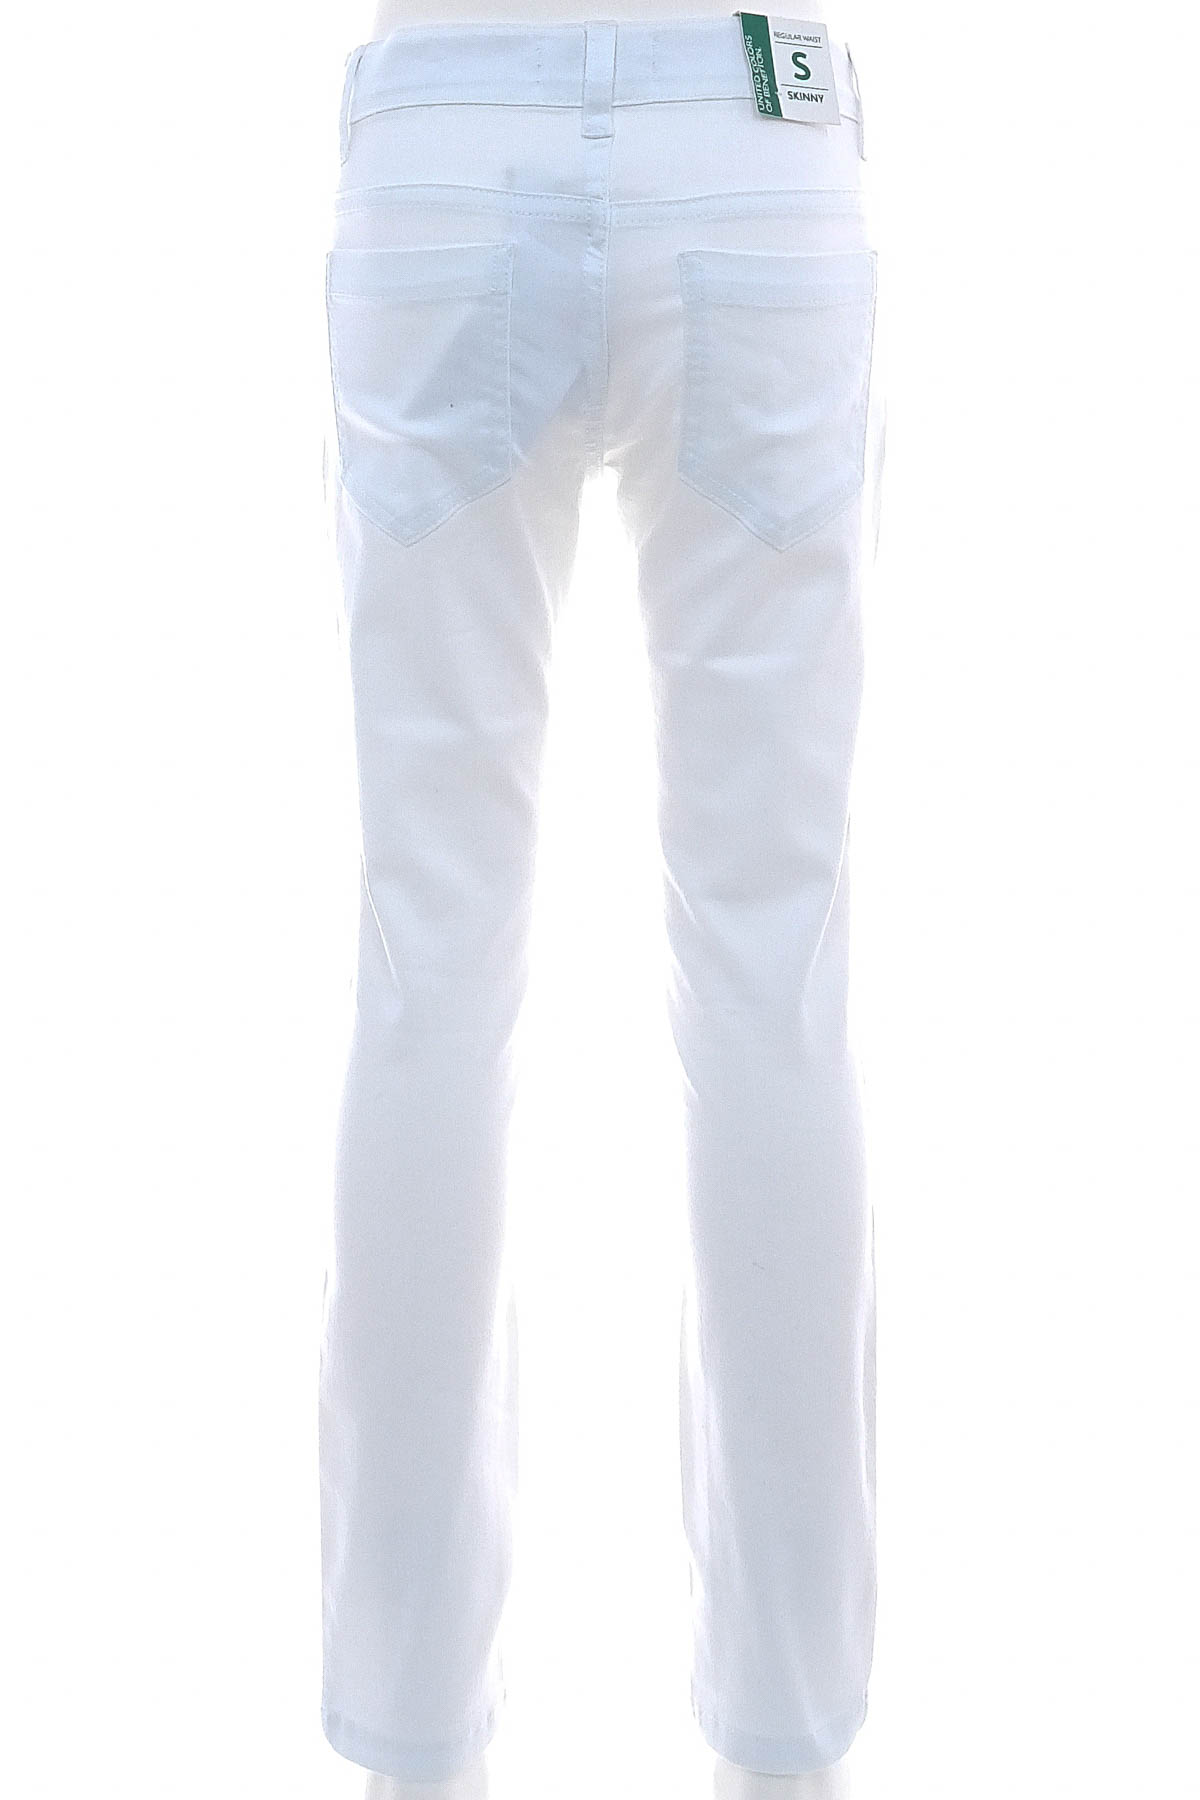 Pantalon pentru fată - United Colors of Benetton - 1